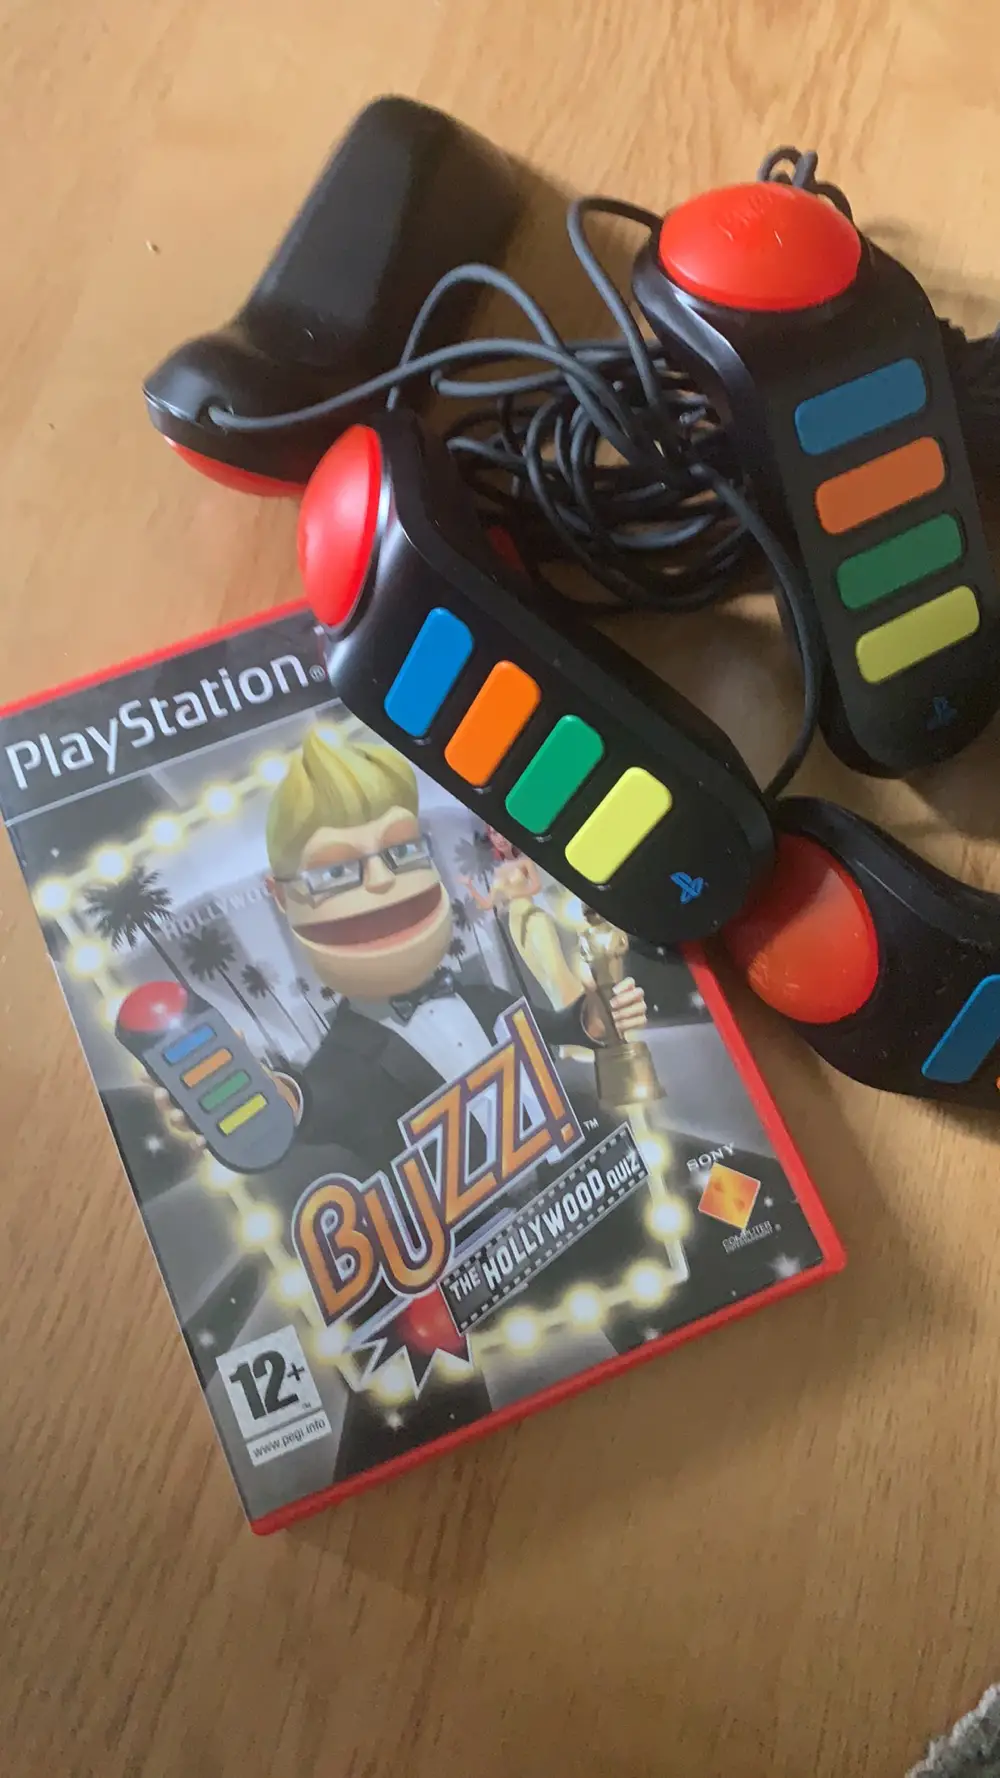 Køb Playstation 2 spil Buzz spil til ps2 m/ buzz knap af Lykke Reshopper · Shop secondhand til børn, mor og bolig